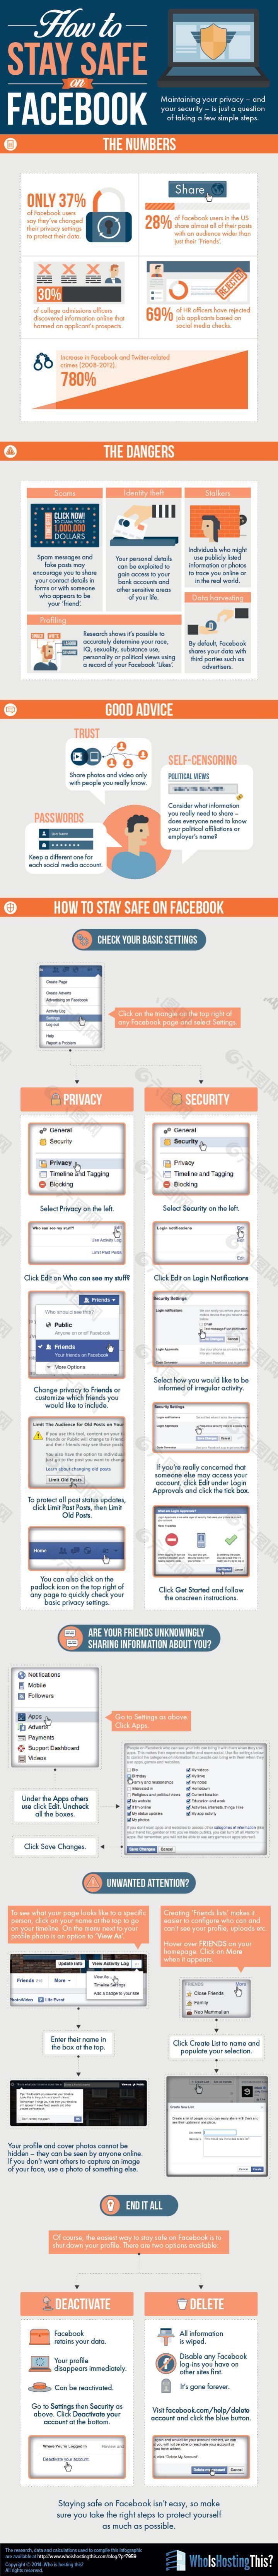 扁平多彩-在Facebook上如何保持信息安全